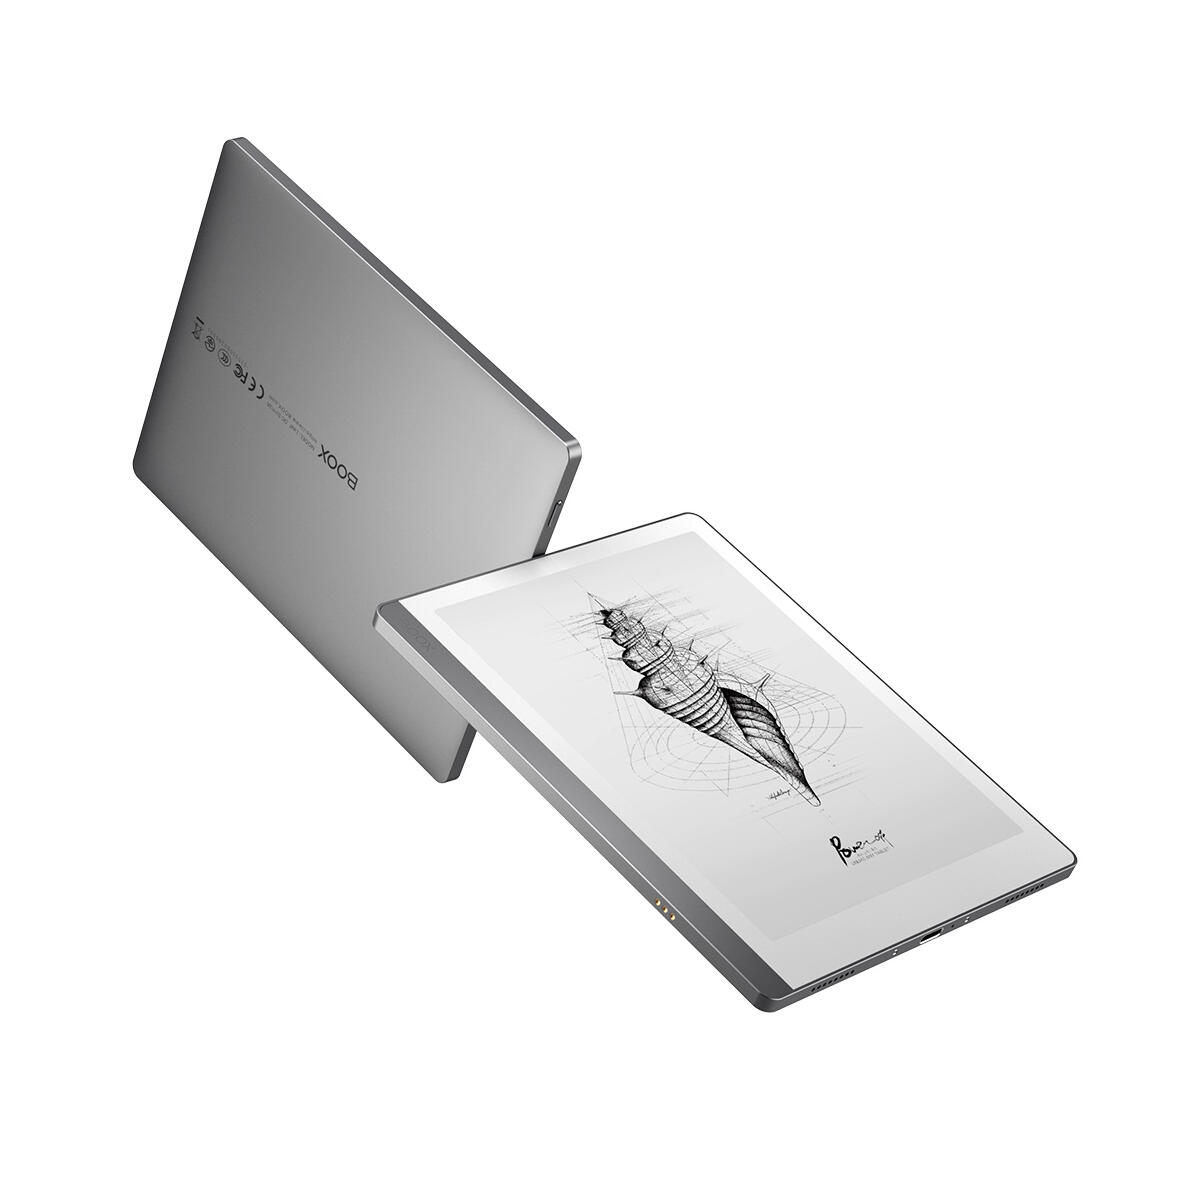 ONYX BOOX Leaf 32 GB Bluetooth Silber eBook Reader USB-C, WLAN